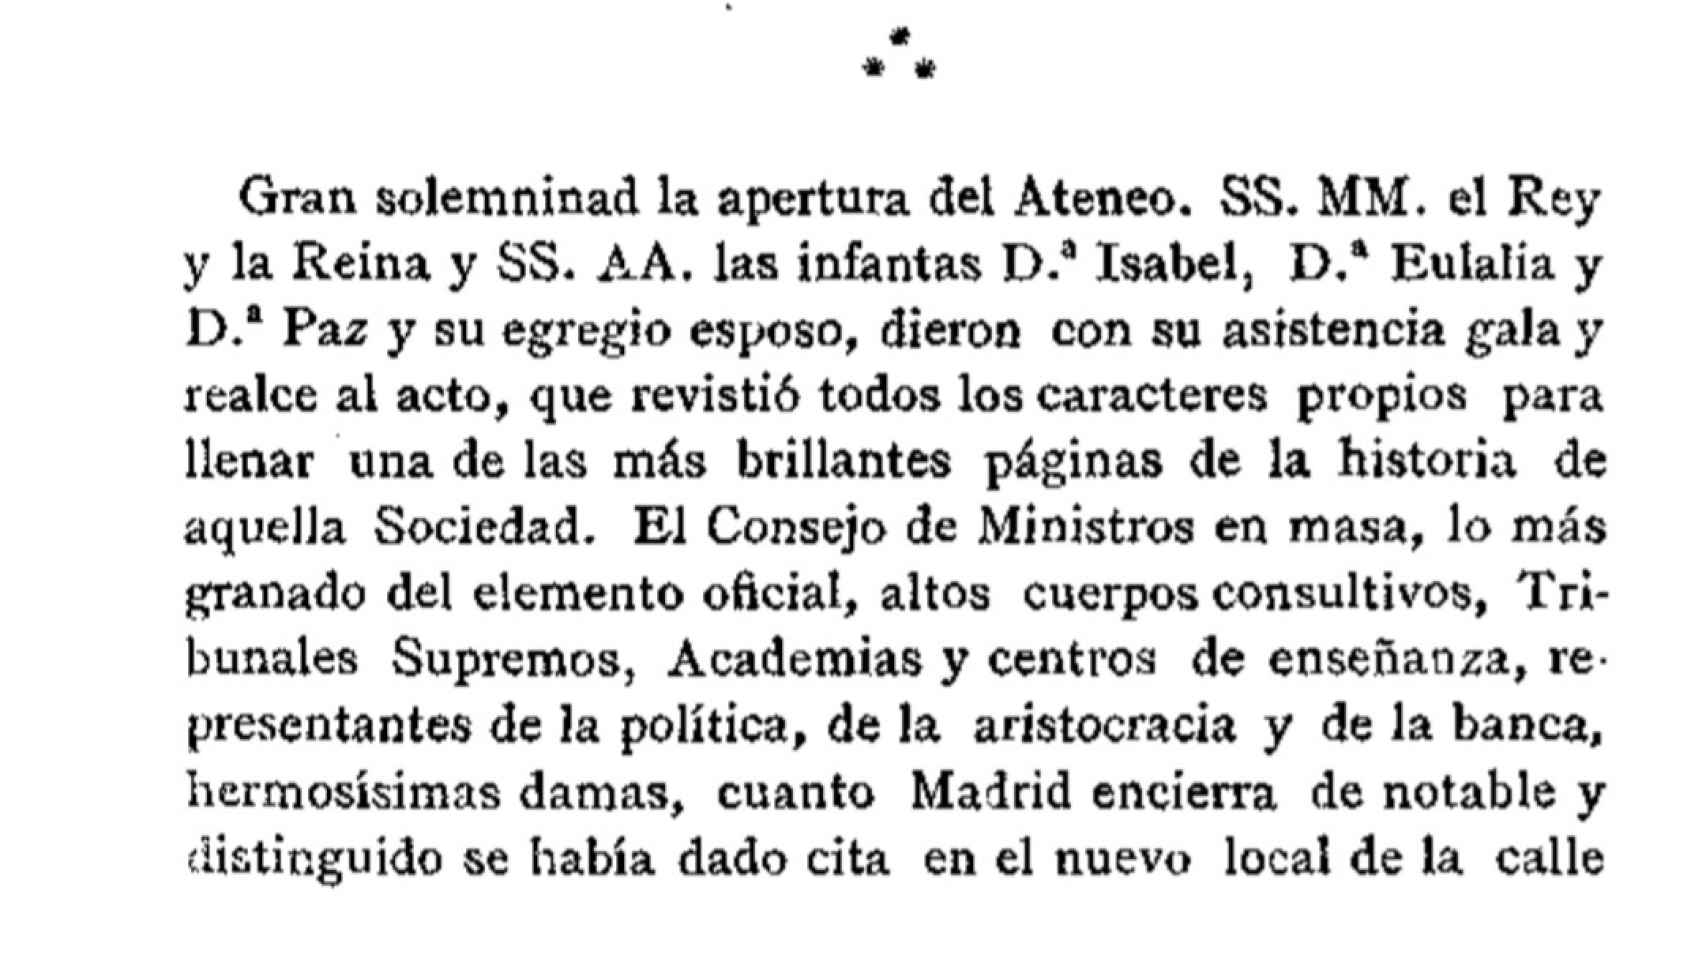 Fragmento de la crónica de la inauguración del Ateneo en la Calle del Prado. Revista Contemporánea, 1884.